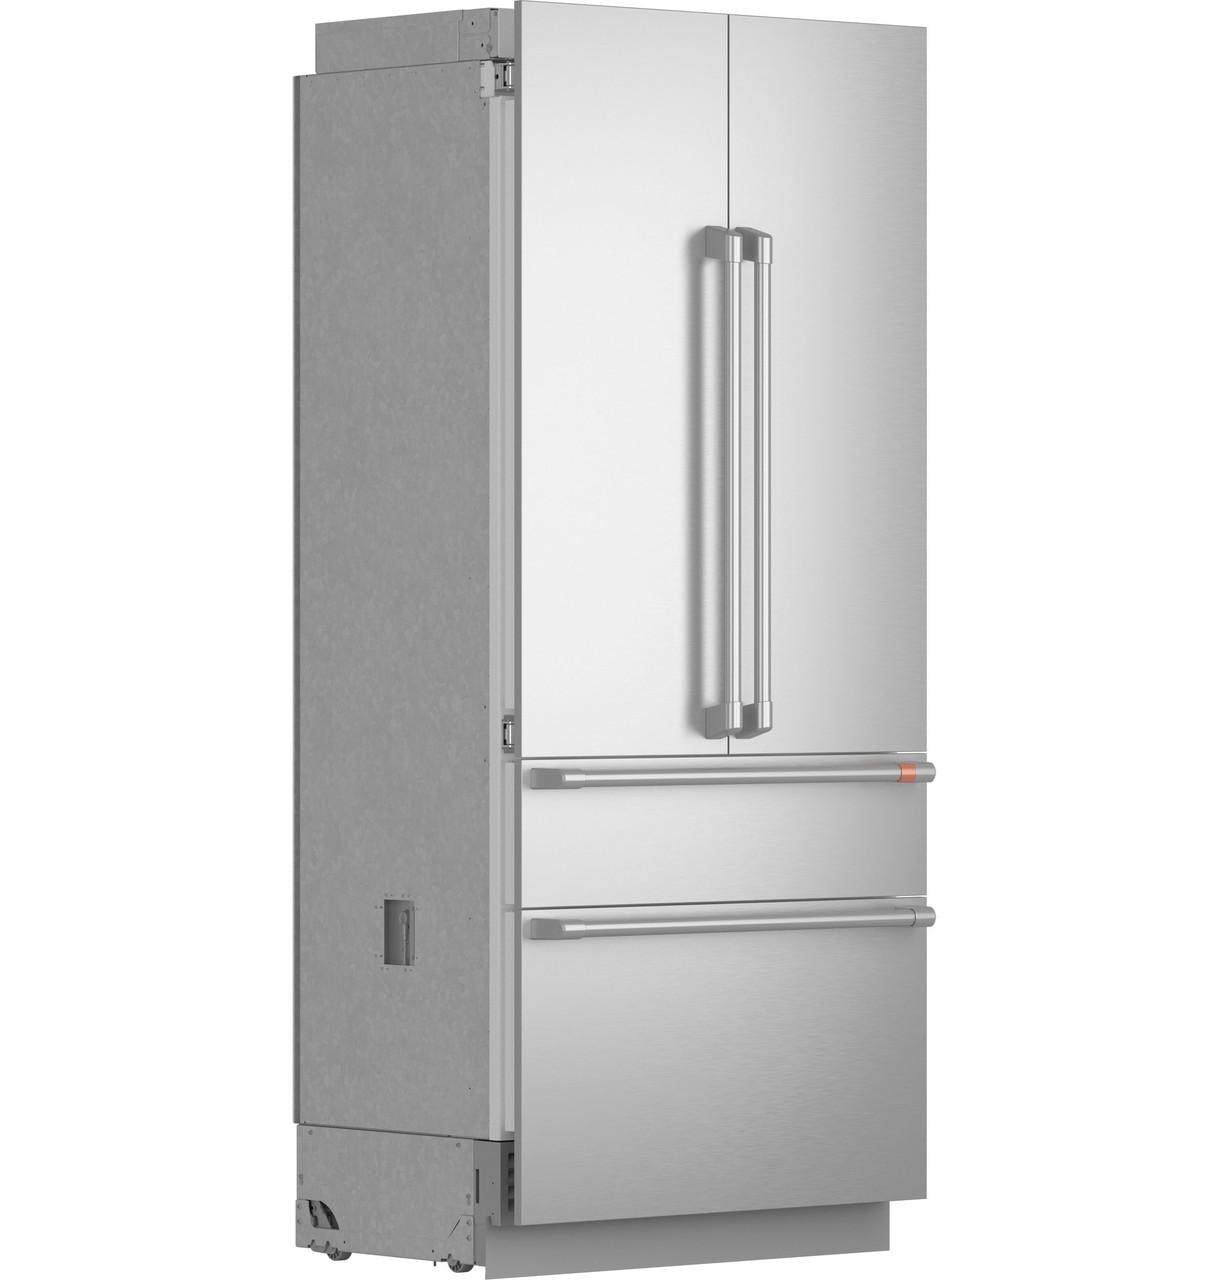 Cafe Caf(eback)™ 36" Integrated French-Door Refrigerator